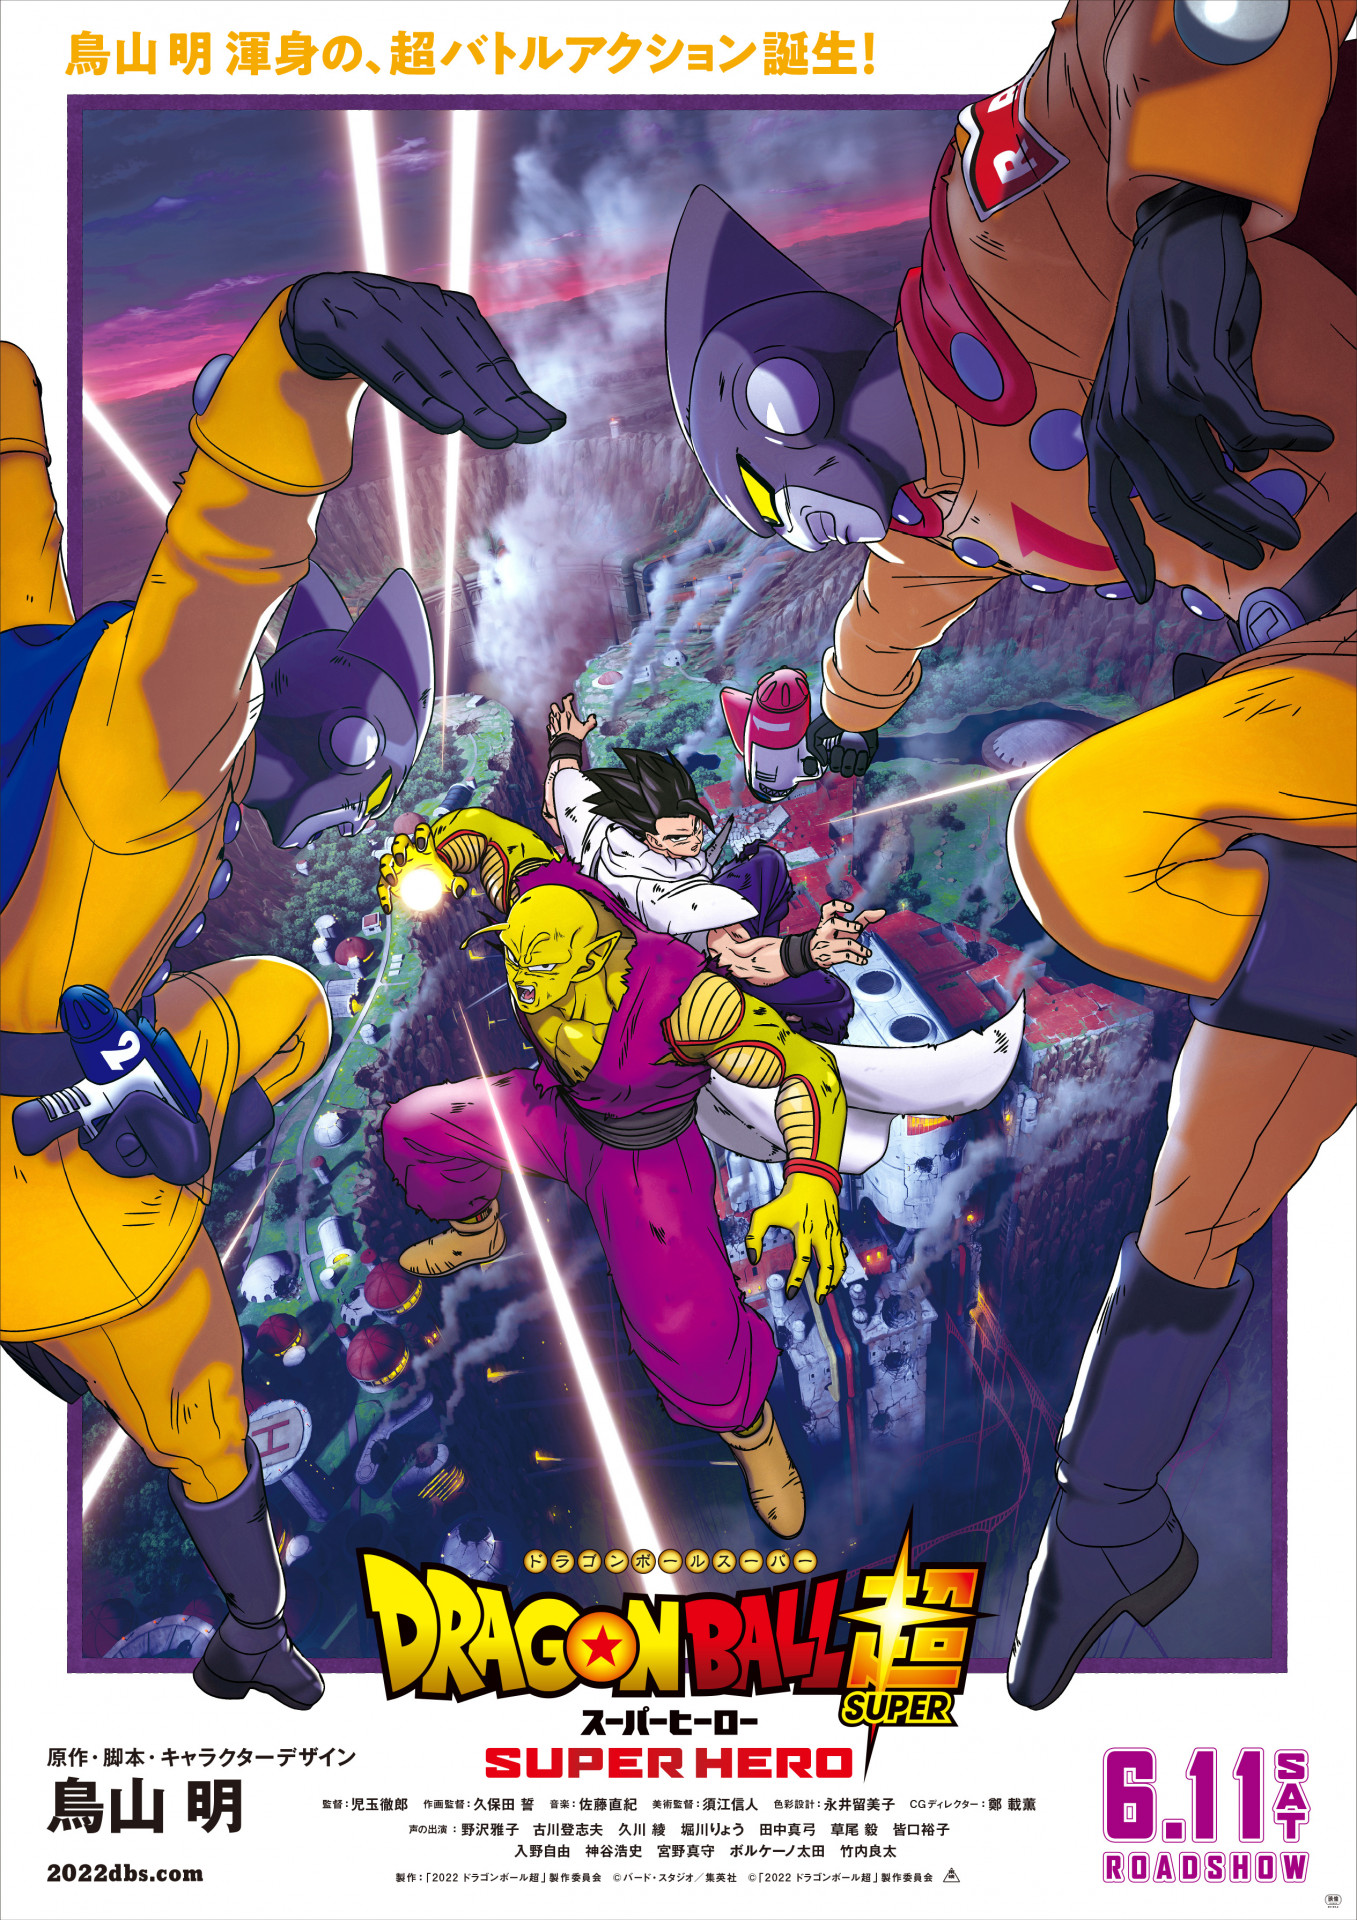 Dragon Ball Super: Super Herói, Criador revela nome da nova forma de Gohan